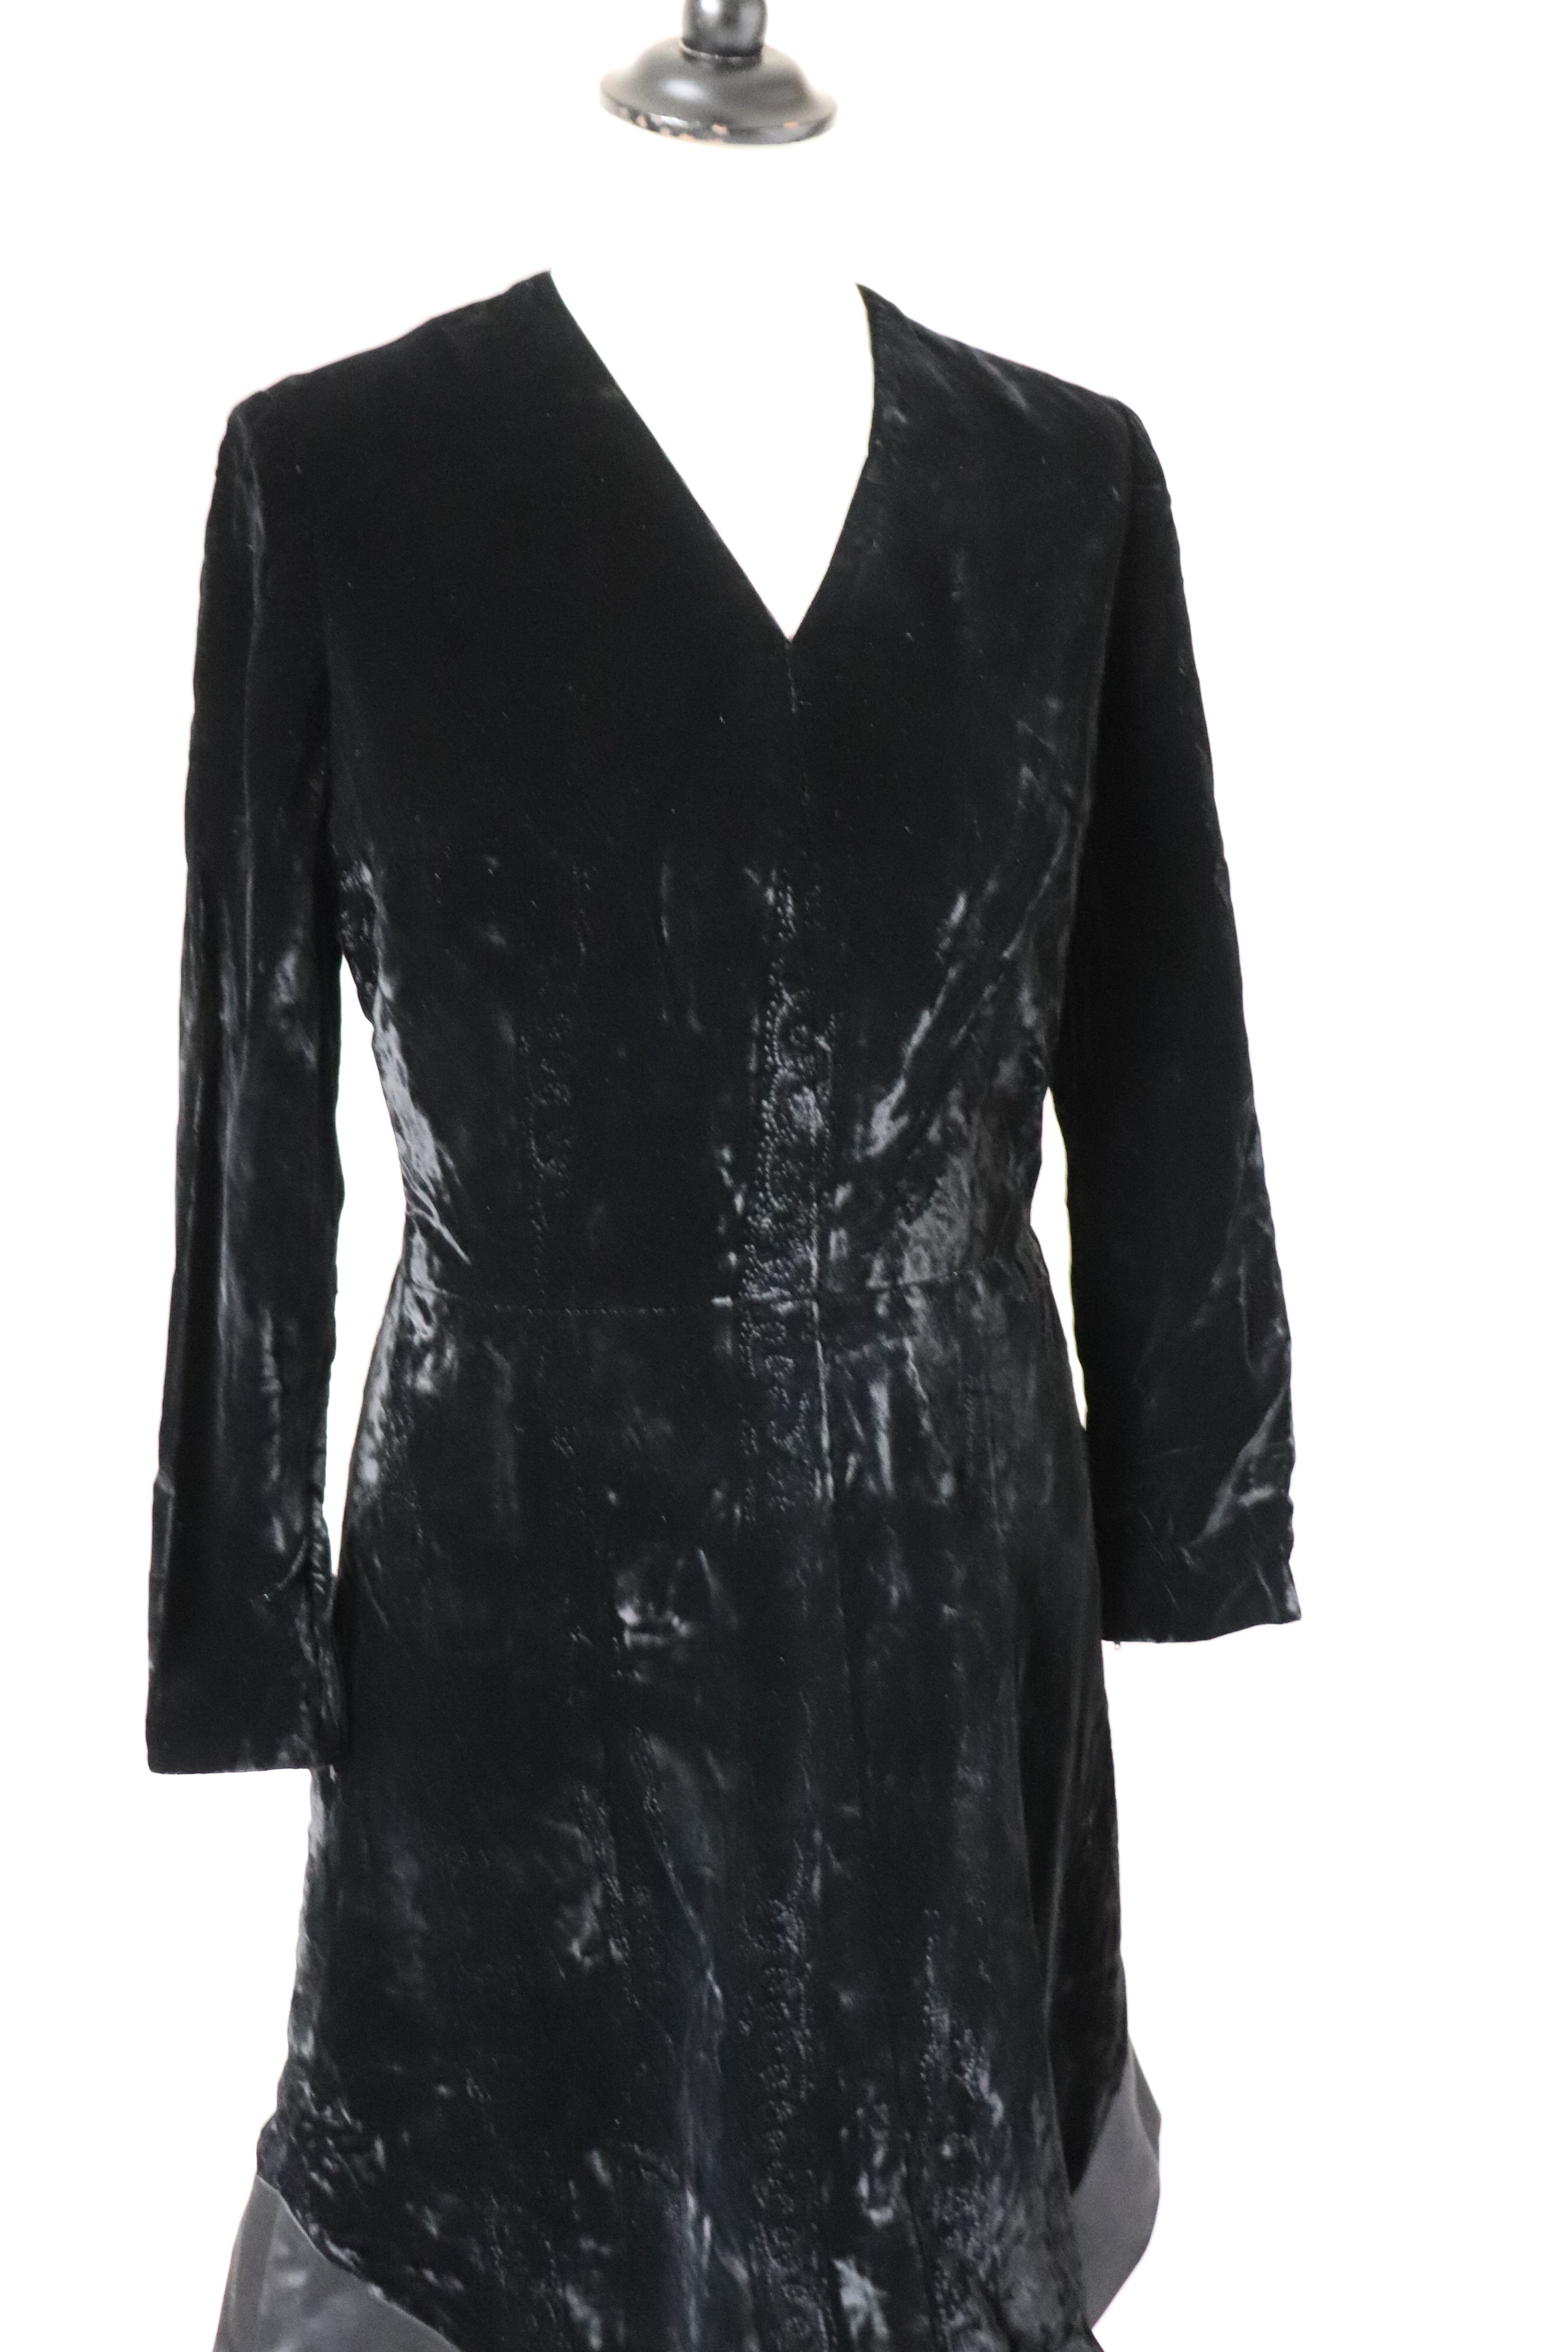 Dossi Black Velvet Long Sleeve Dress - Vintage LBD - 1960s - XXS - UK 6 / 8